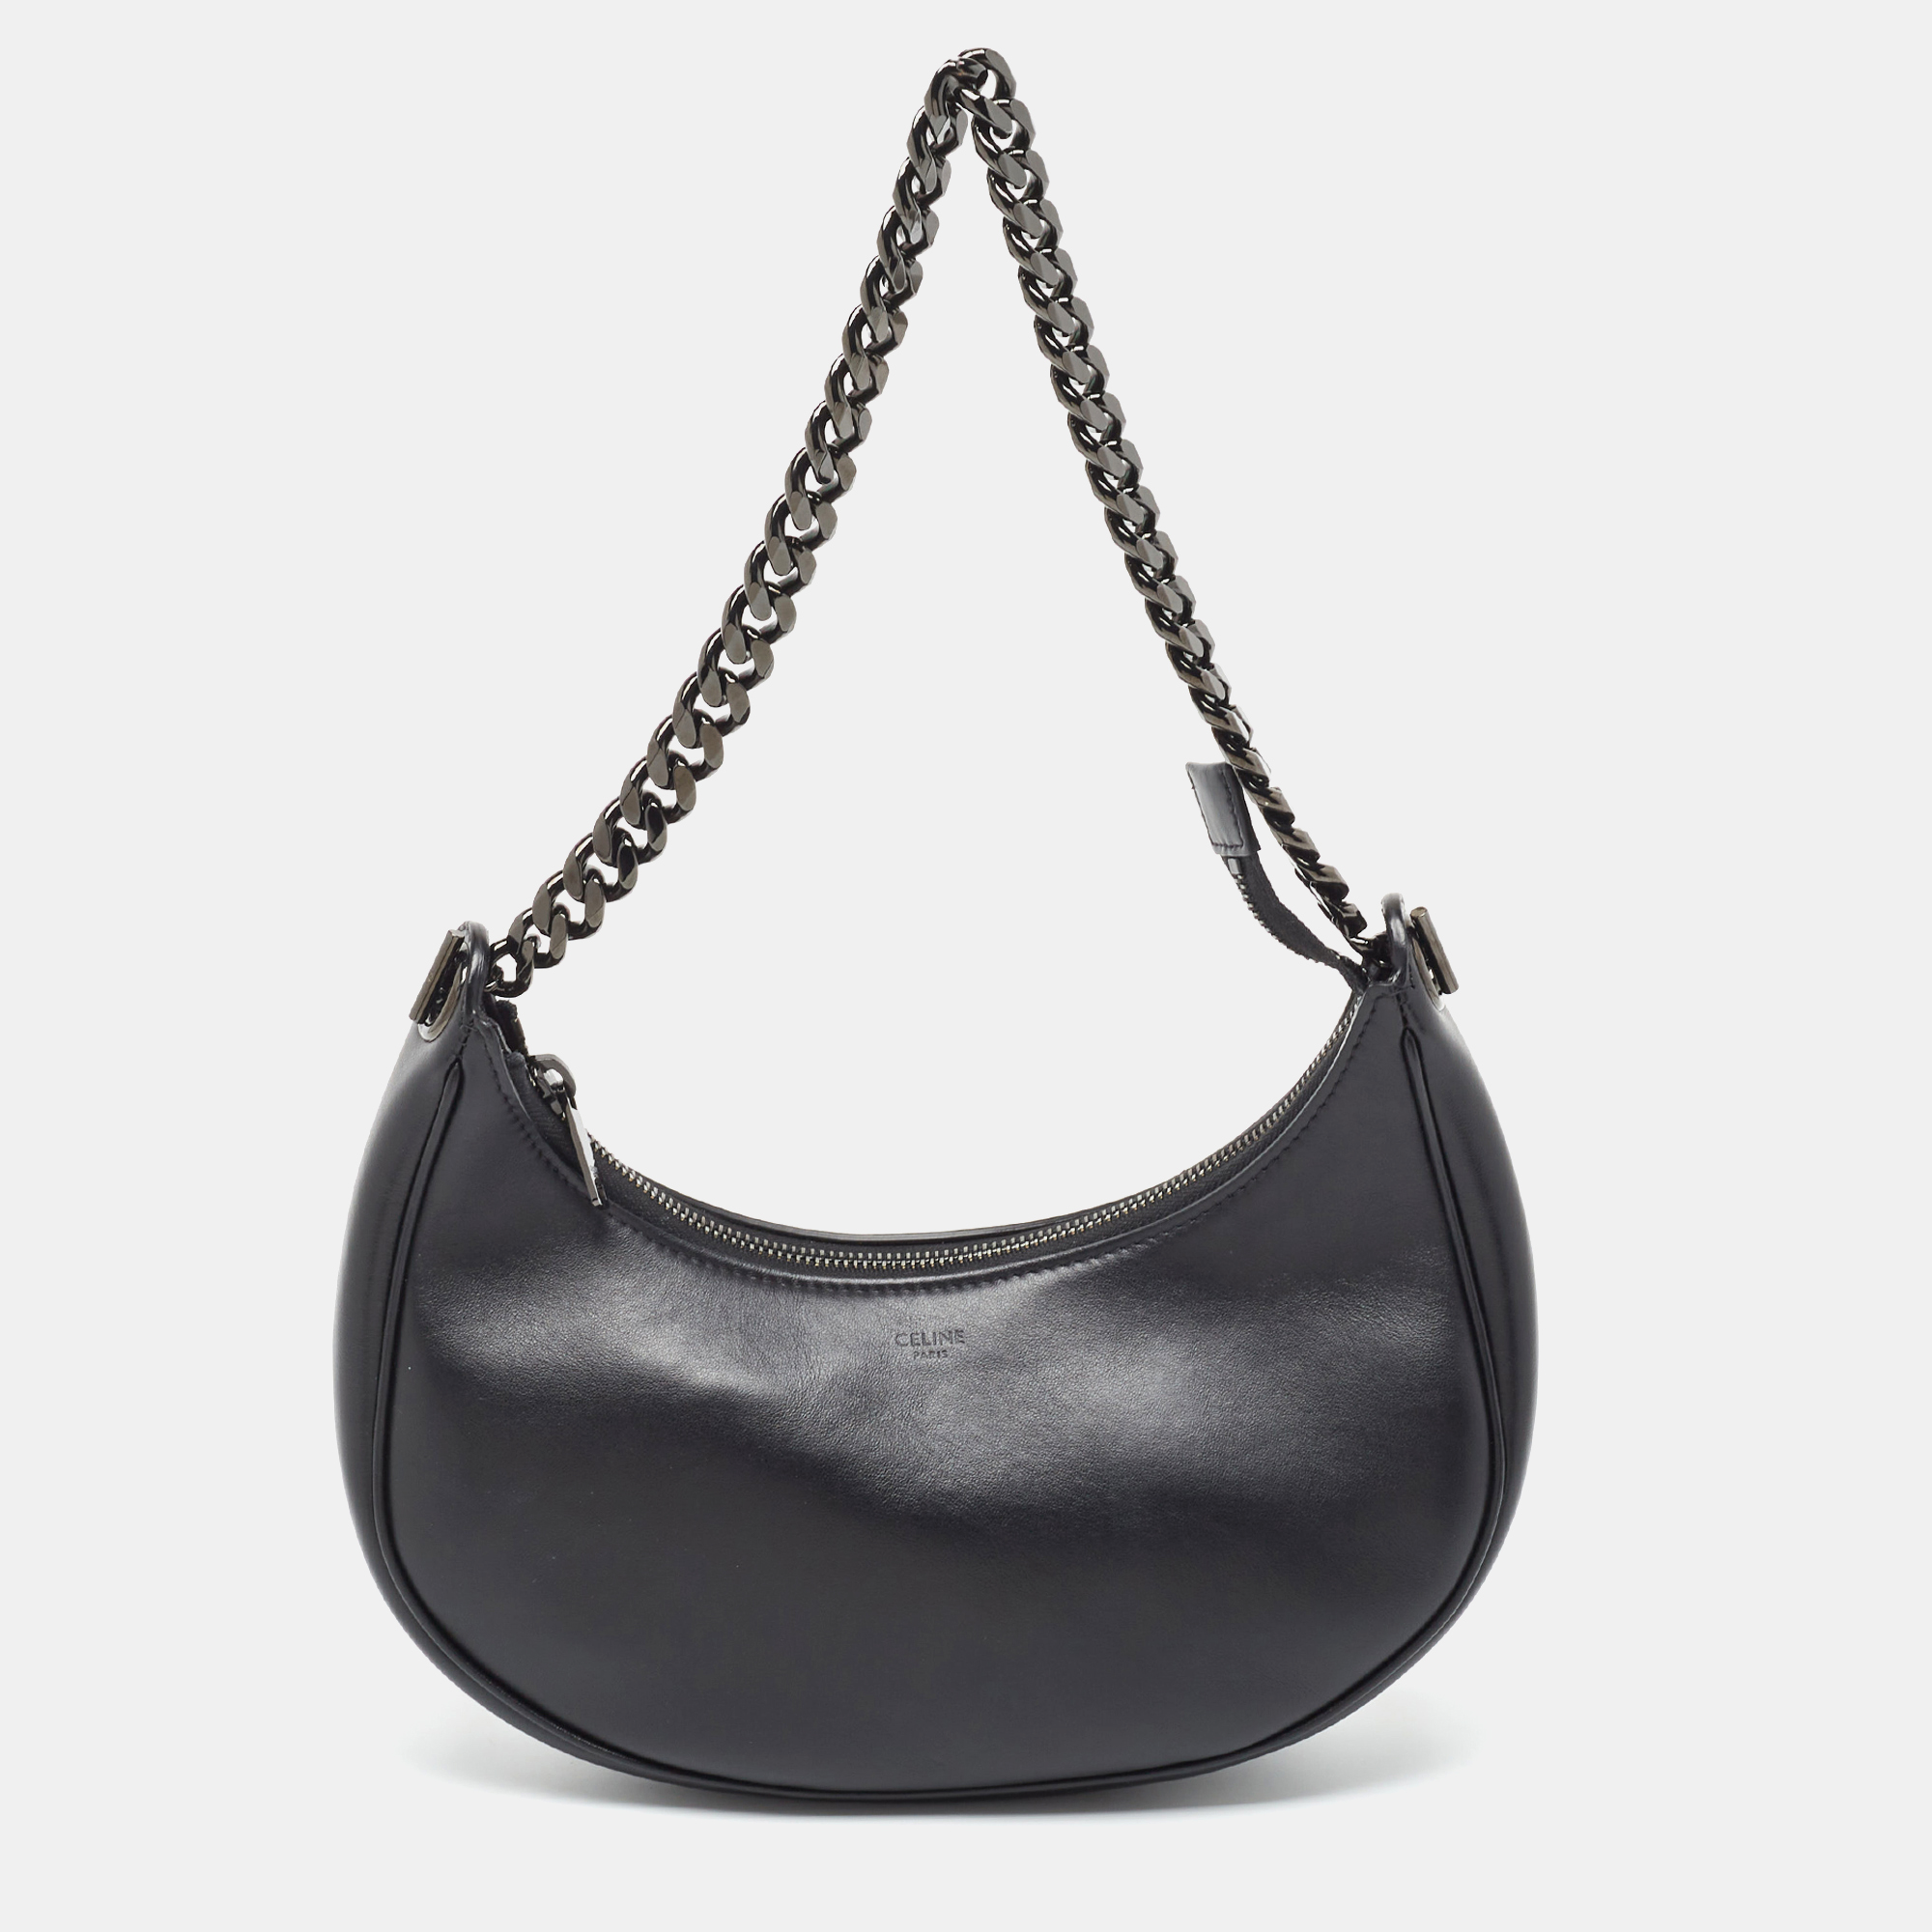 Celine Black Leather Ava Chain Shoulder Bag